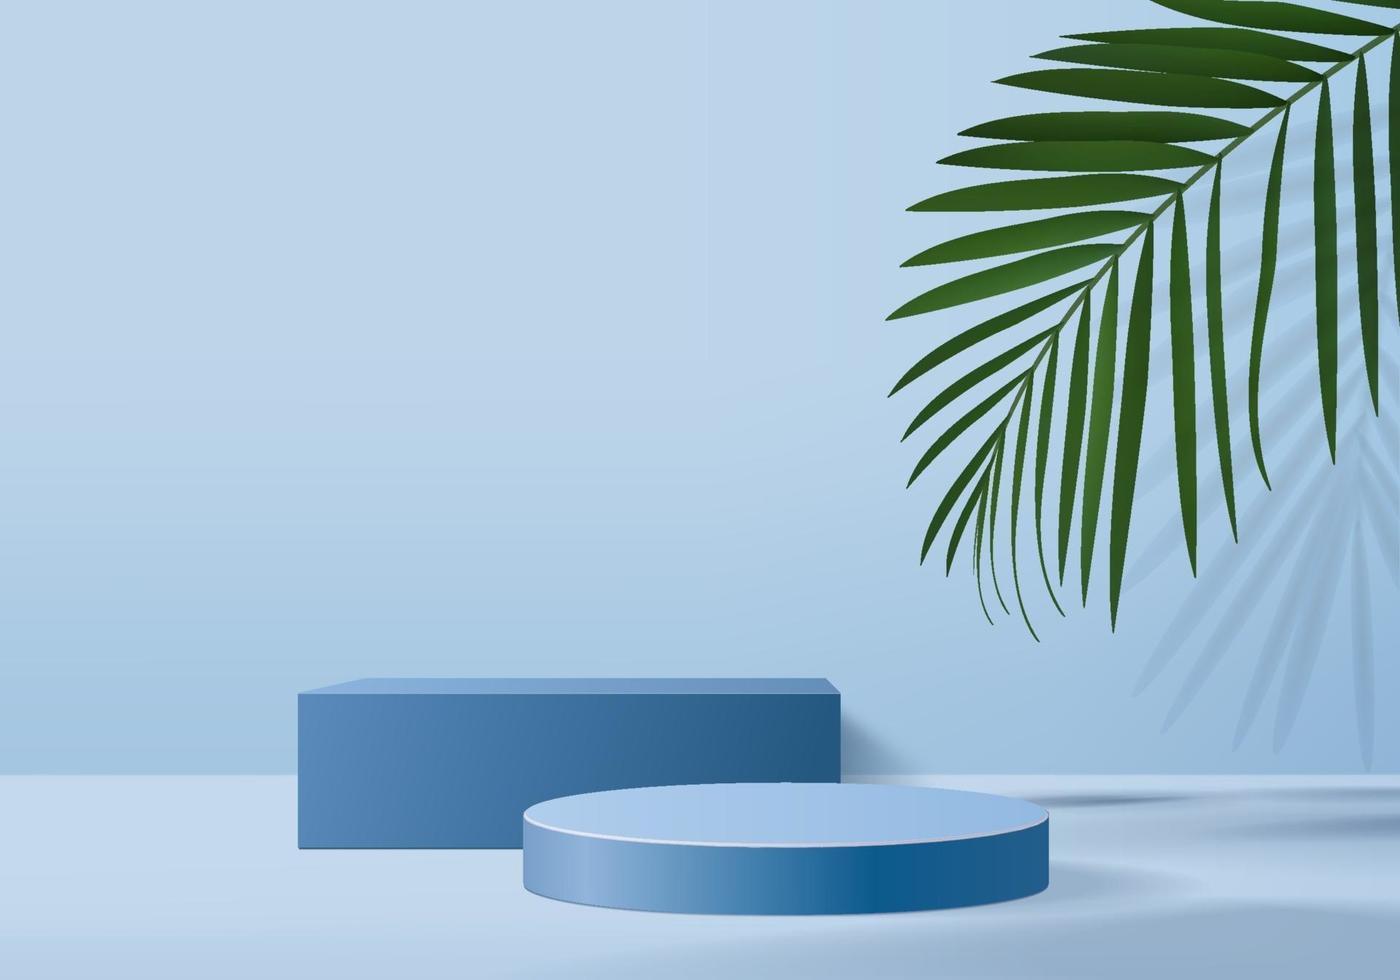 Produtos de fundo 3D exibem cena de pódio com folha verde vetor de fundo de plataforma geométrica renderização em 3D com suporte de pódio para mostrar vitrine de palco de produtos cosméticos em estúdio azul de exibição de pedestal